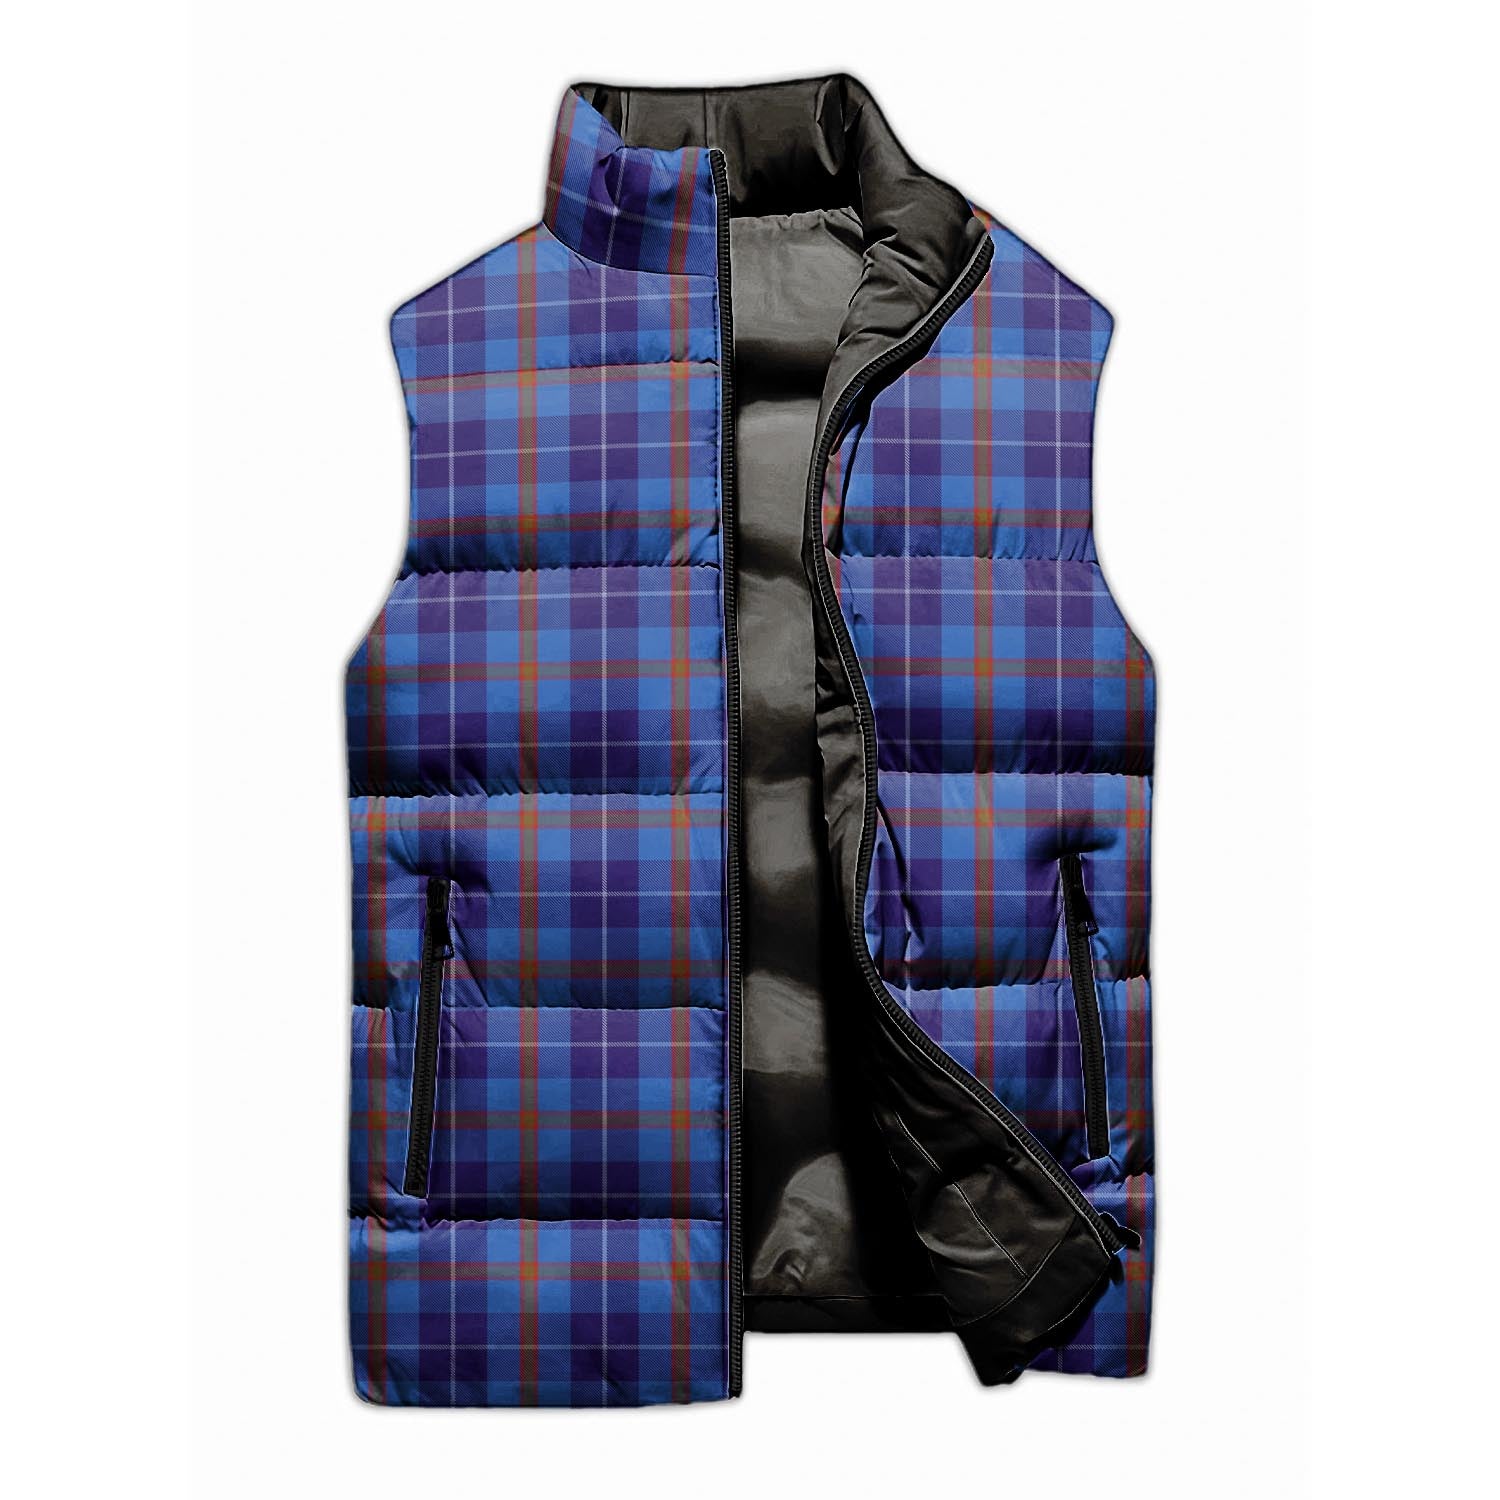 Bryson Tartan Sleeveless Puffer Jacket - Tartanvibesclothing